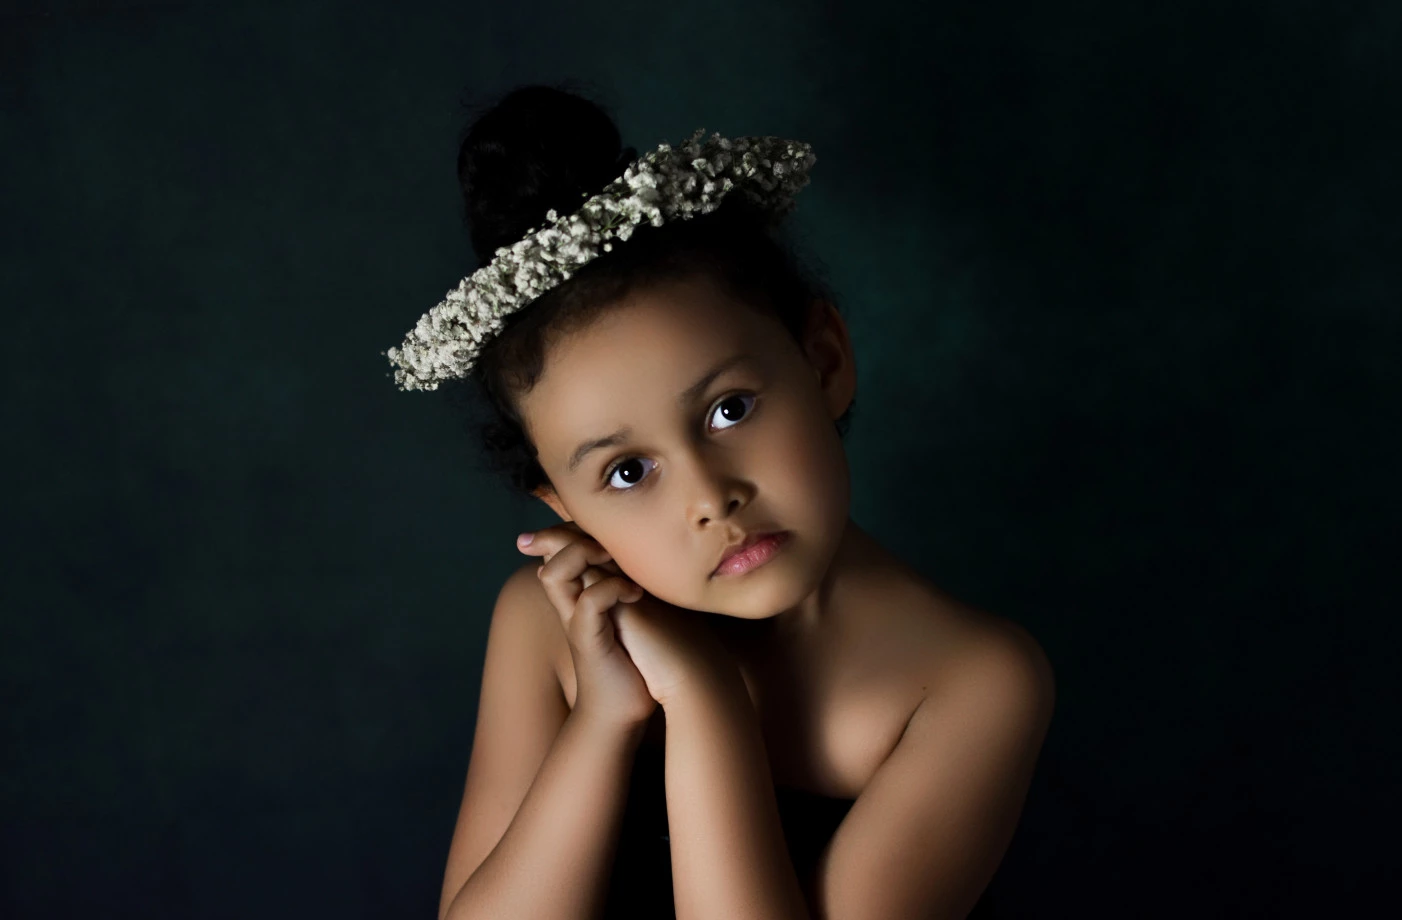 fotograf krakow bienussaphotography portfolio sesje dzieciece fotografia dziecieca sesja urodzinowa